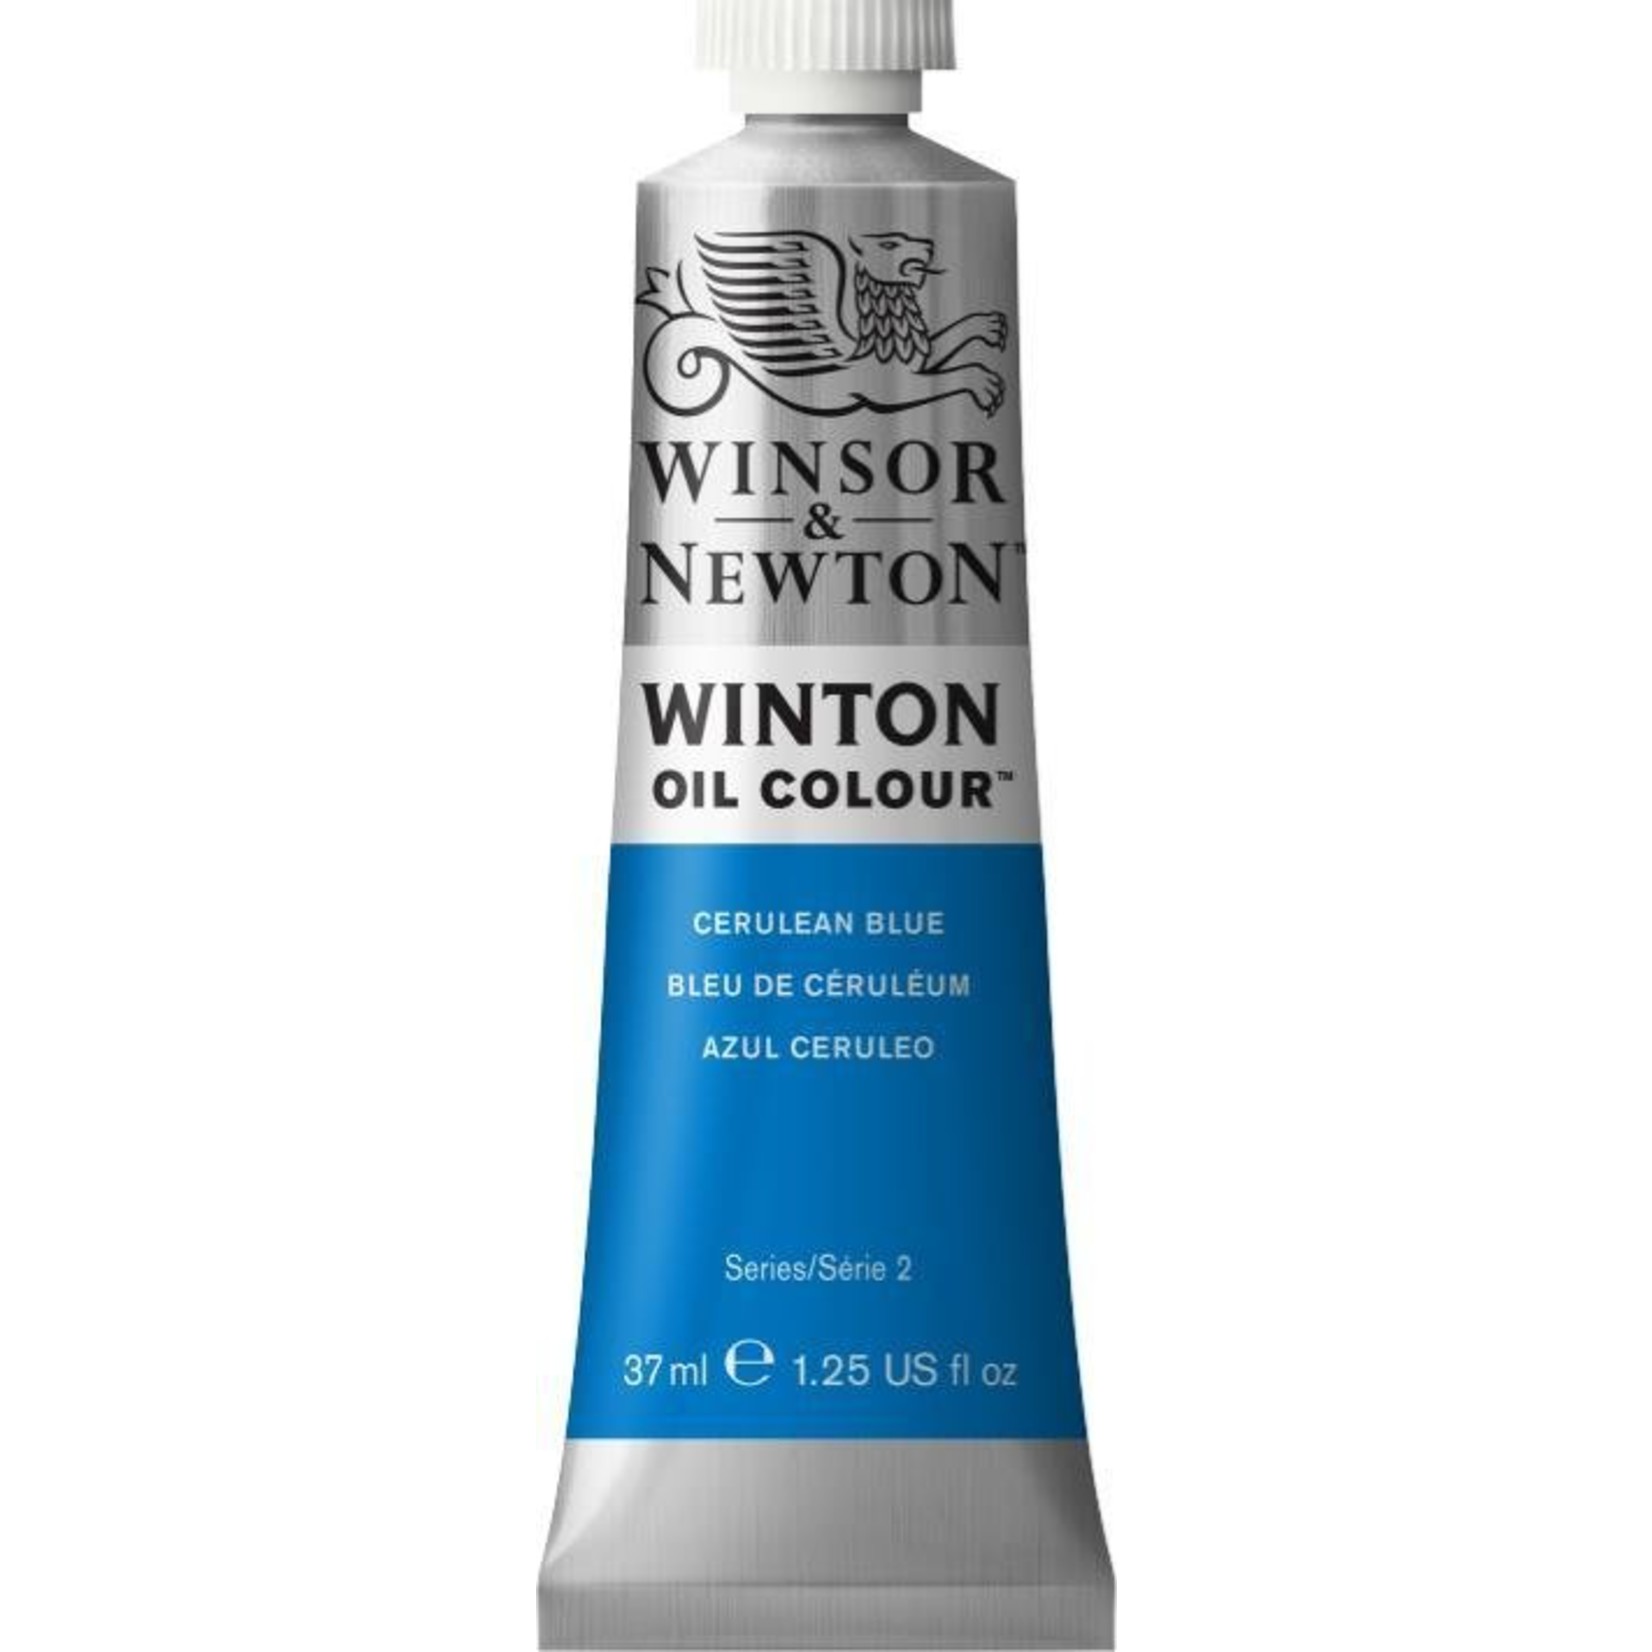 WINSOR NEWTON WINTON OIL COLOUR CERULEAN BLUE 37ML